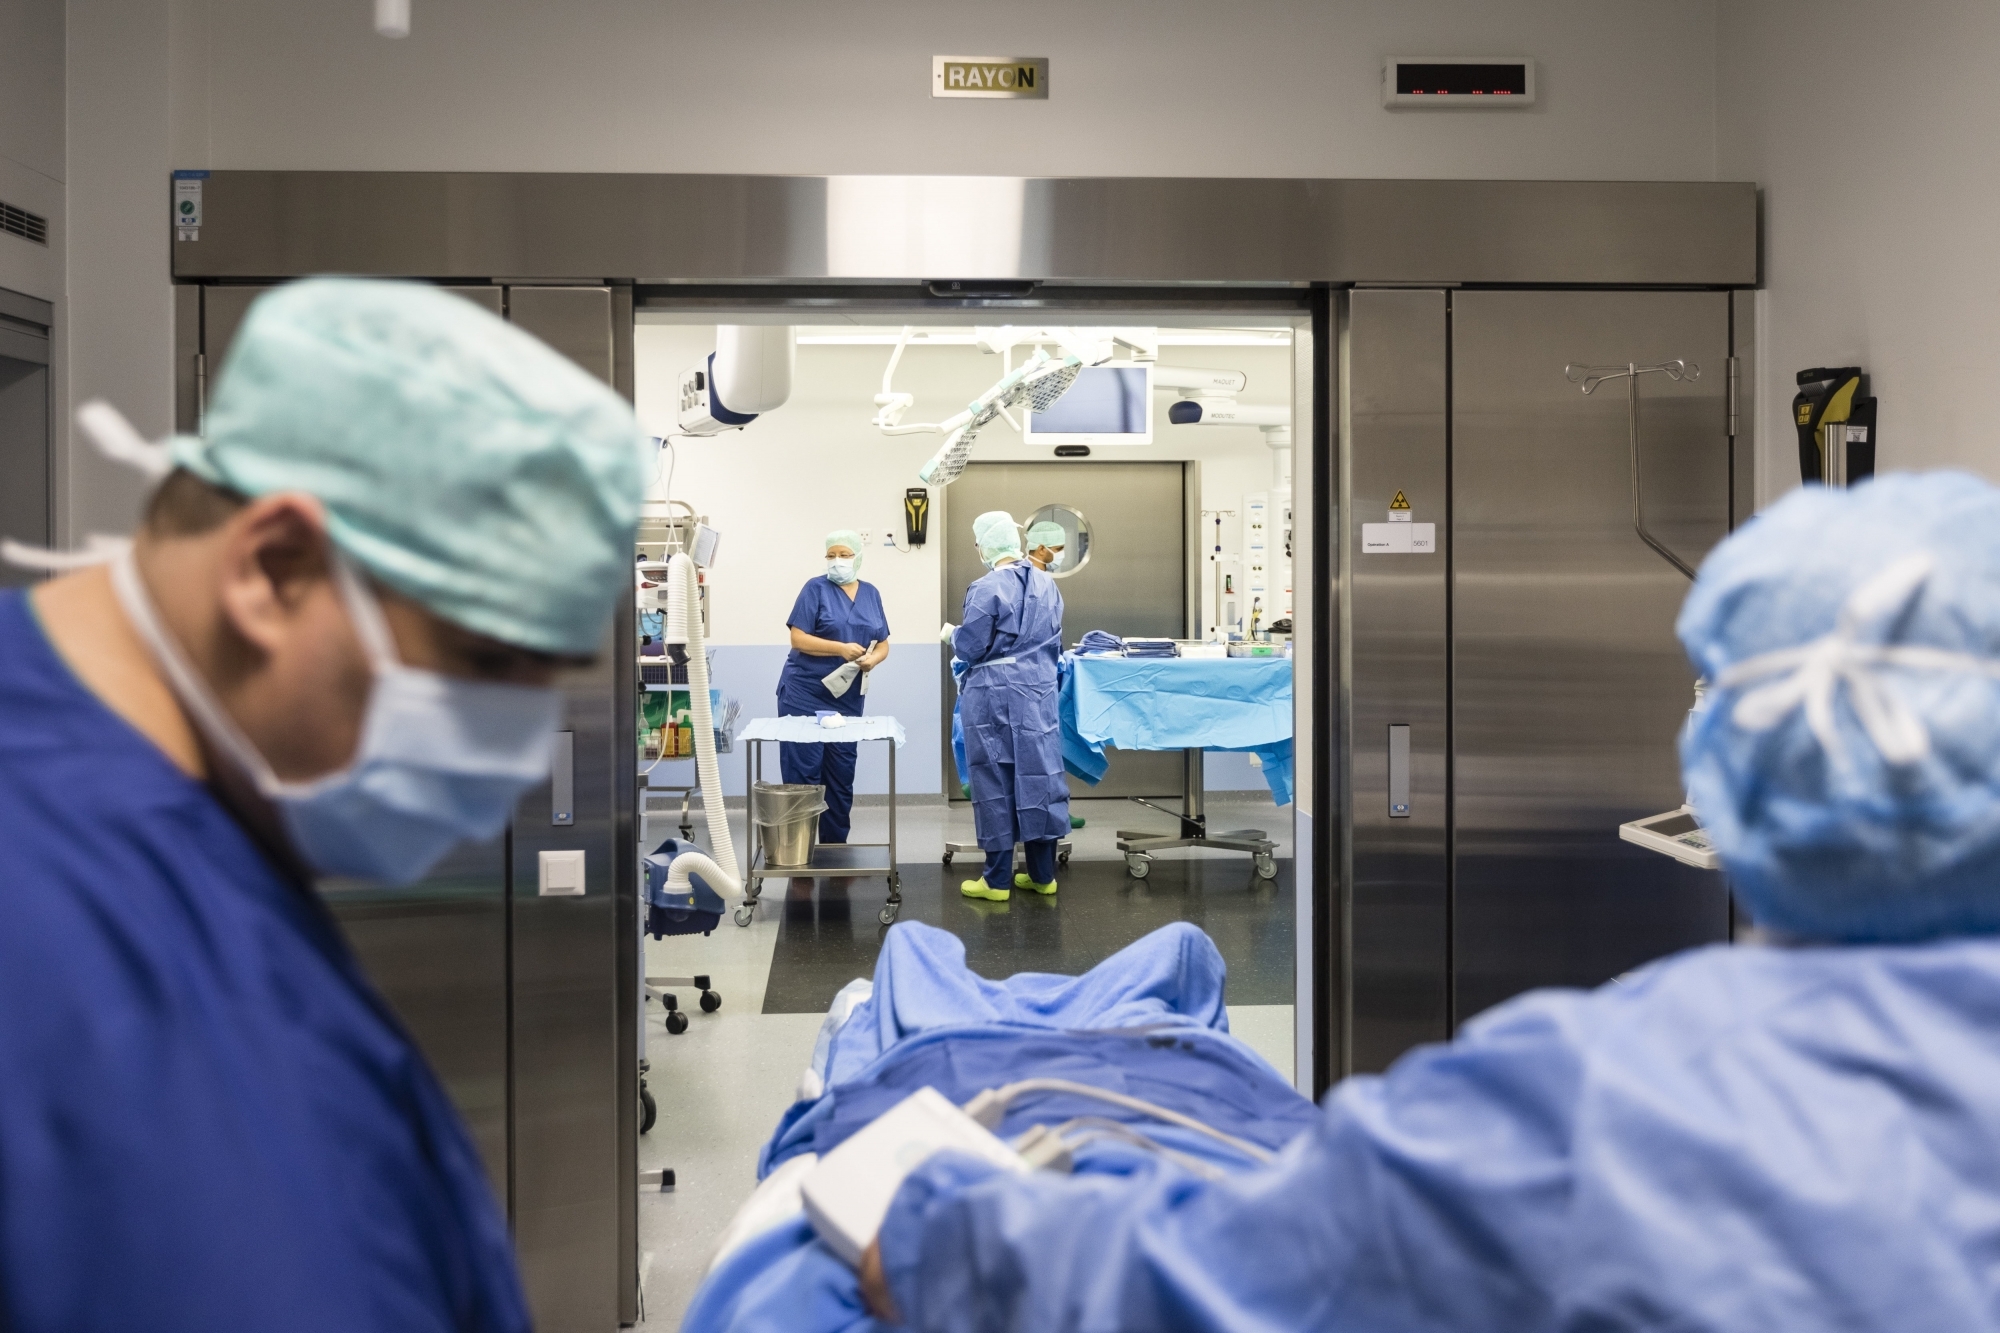 Les salles d'opération de l'hôpital de la Chaux-de-Fonds sont au centre d'un rapport soumis au Conseil d'Etat.